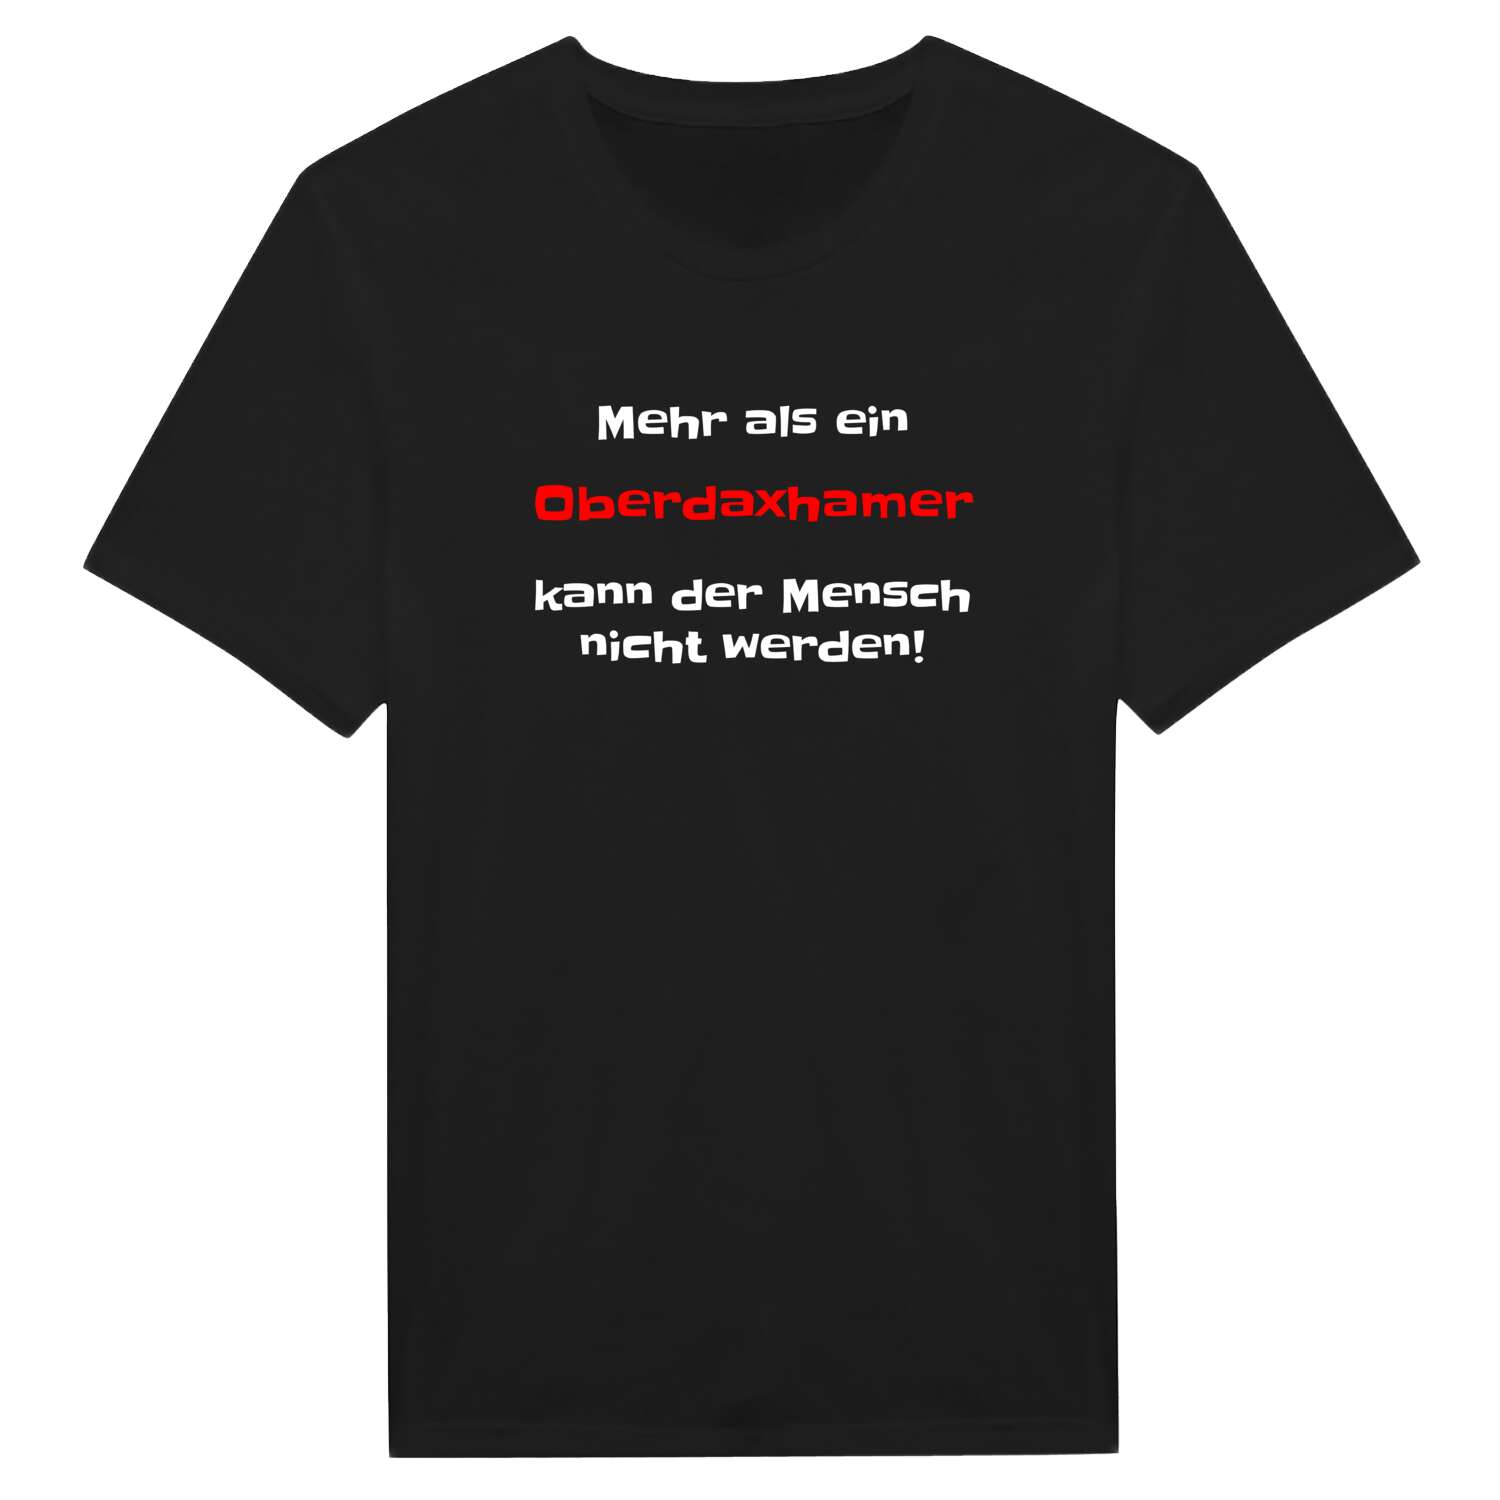 Oberdaxham T-Shirt »Mehr als ein«